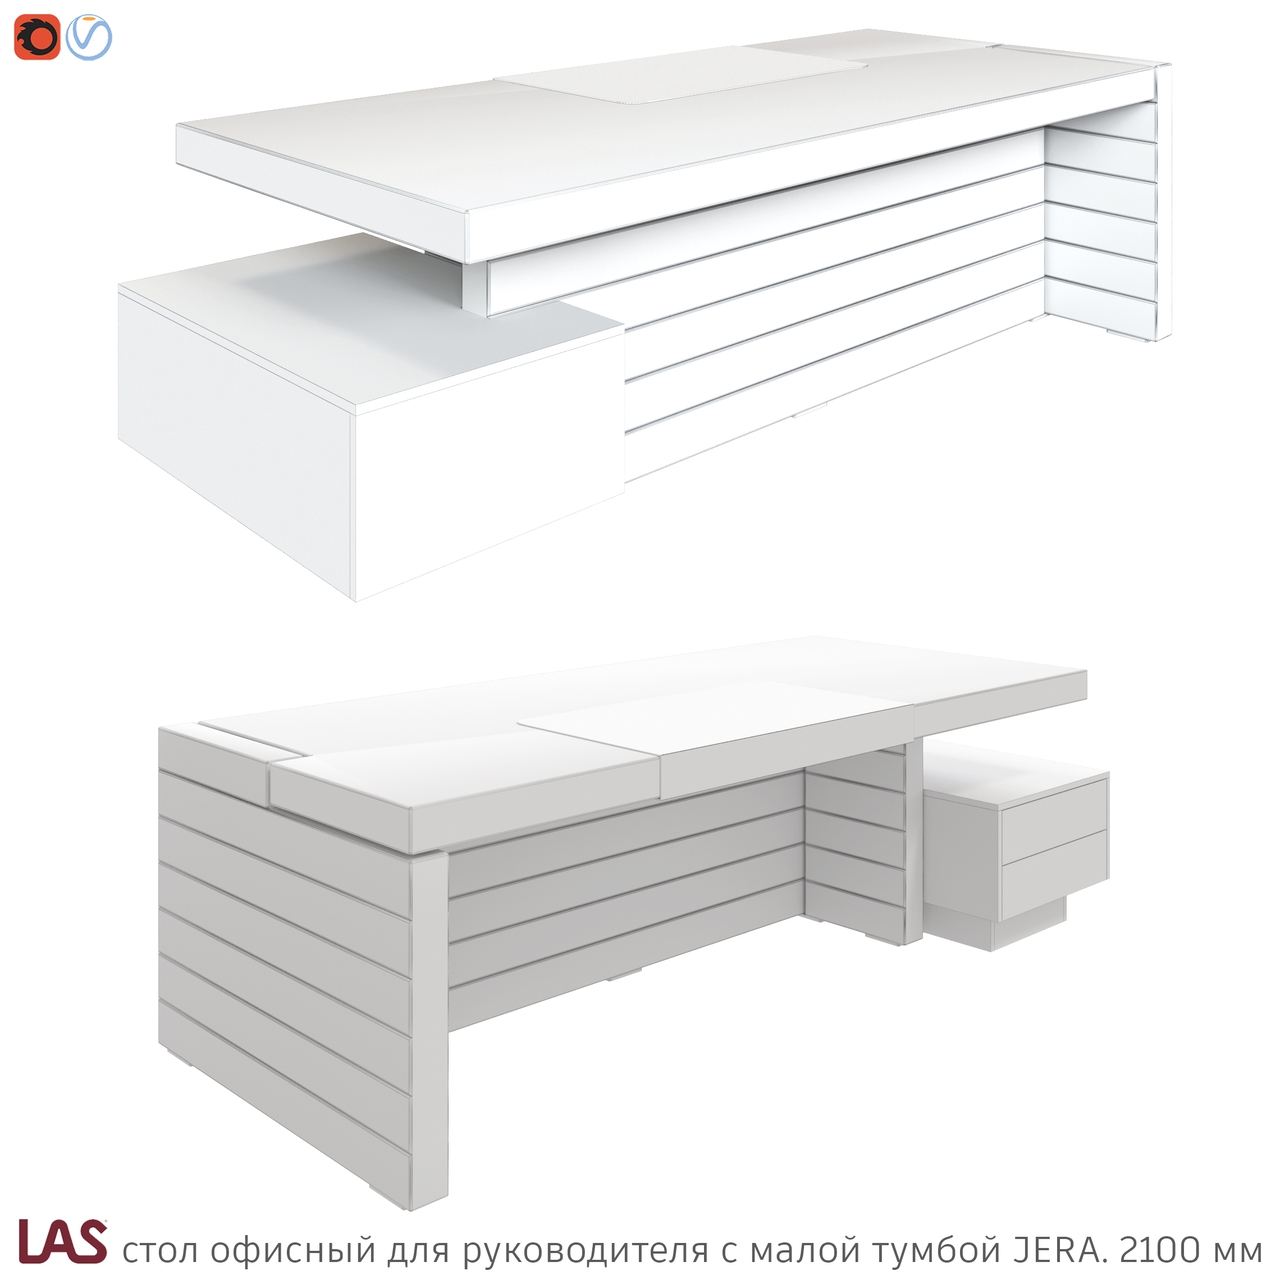 Превью G 3D-модели офисного стола LAS Jera 159917 / 159921